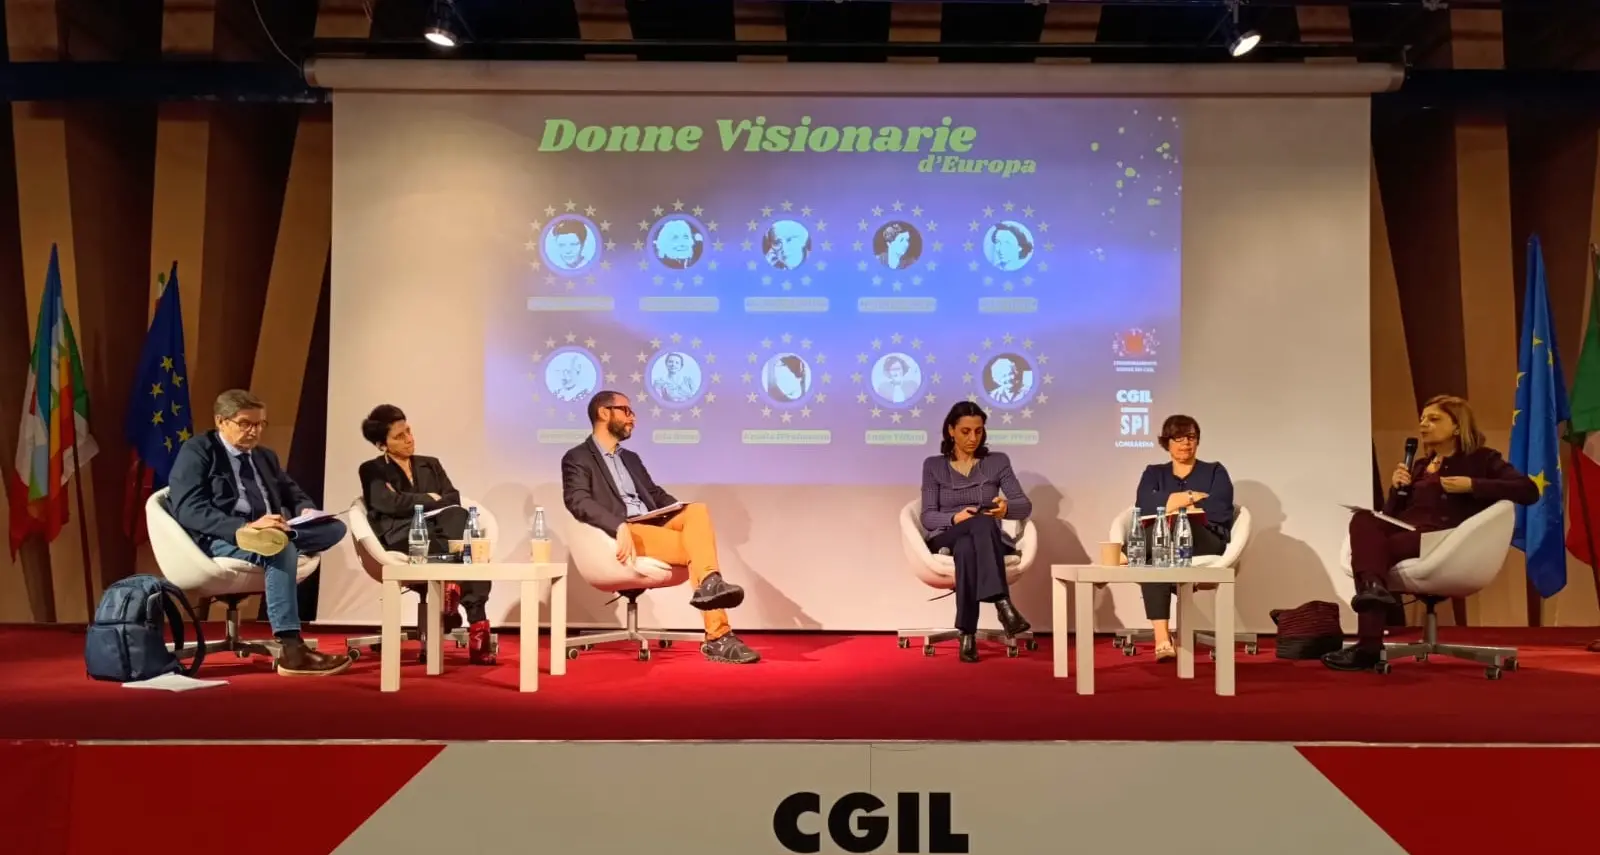 La conferenza dello Spi Lombardia: Donne visionarie d’Europa